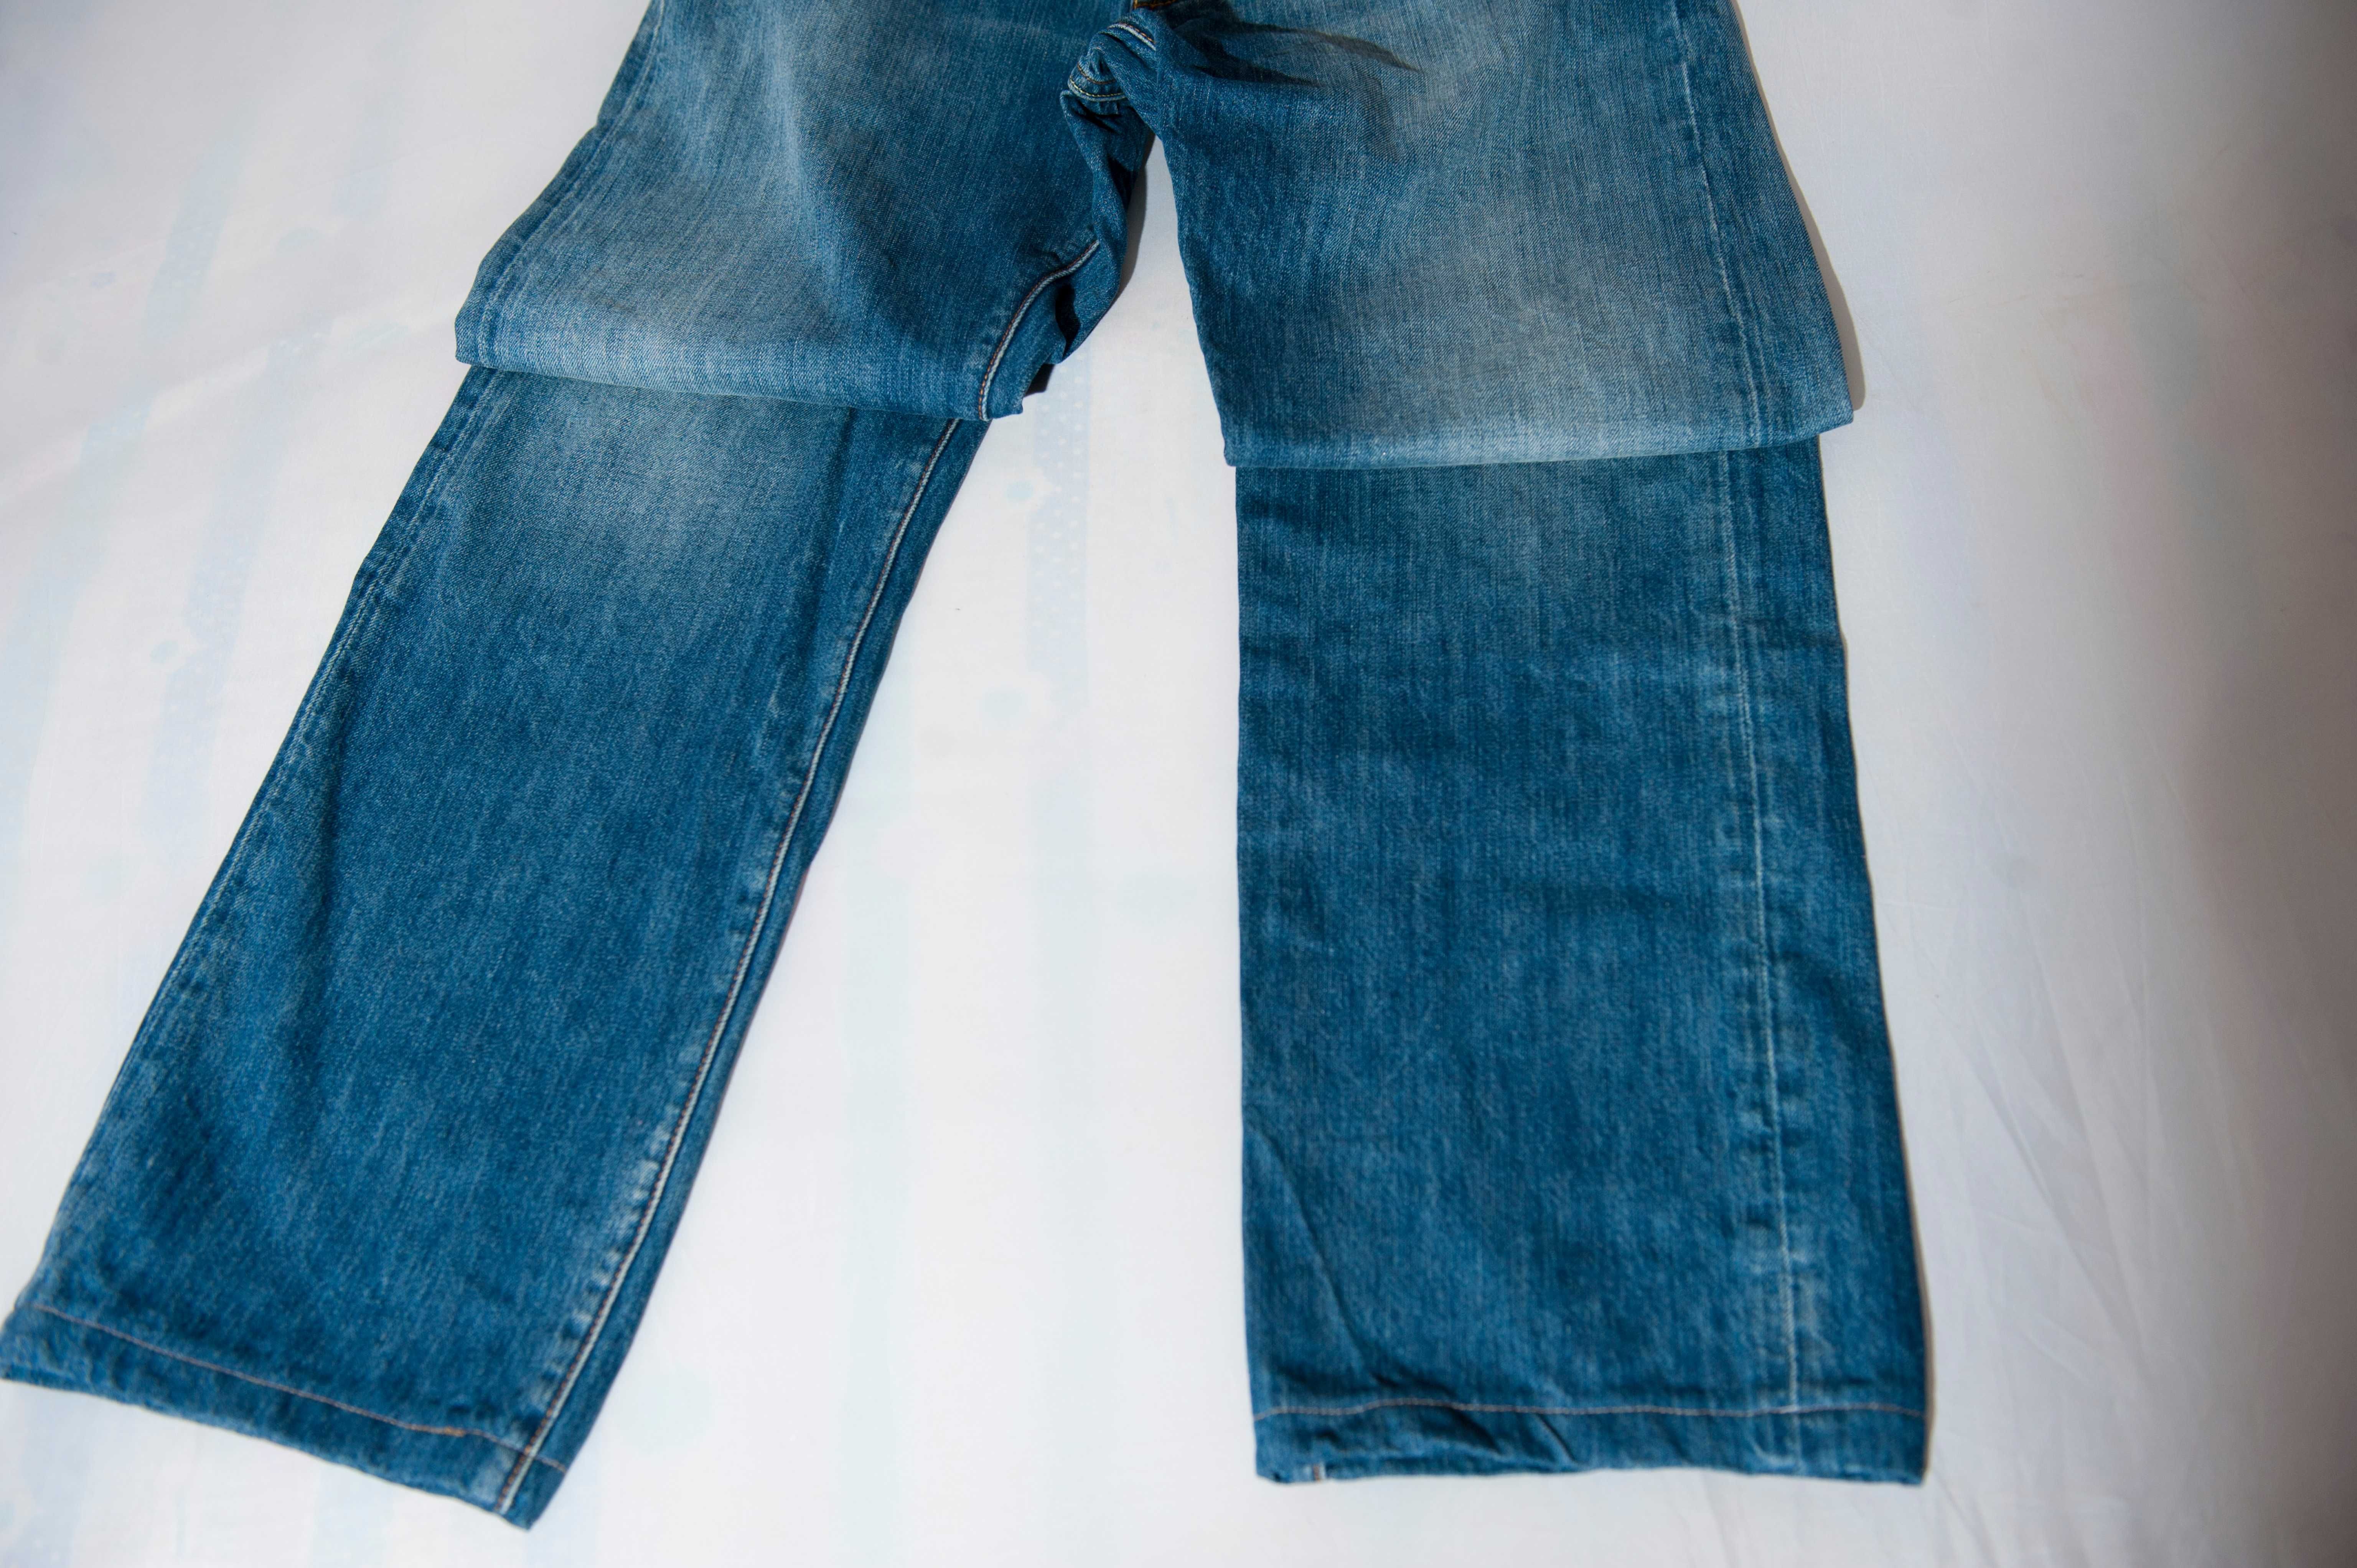 Продаются мужские джинсы оригинального качества! Размер 30-31